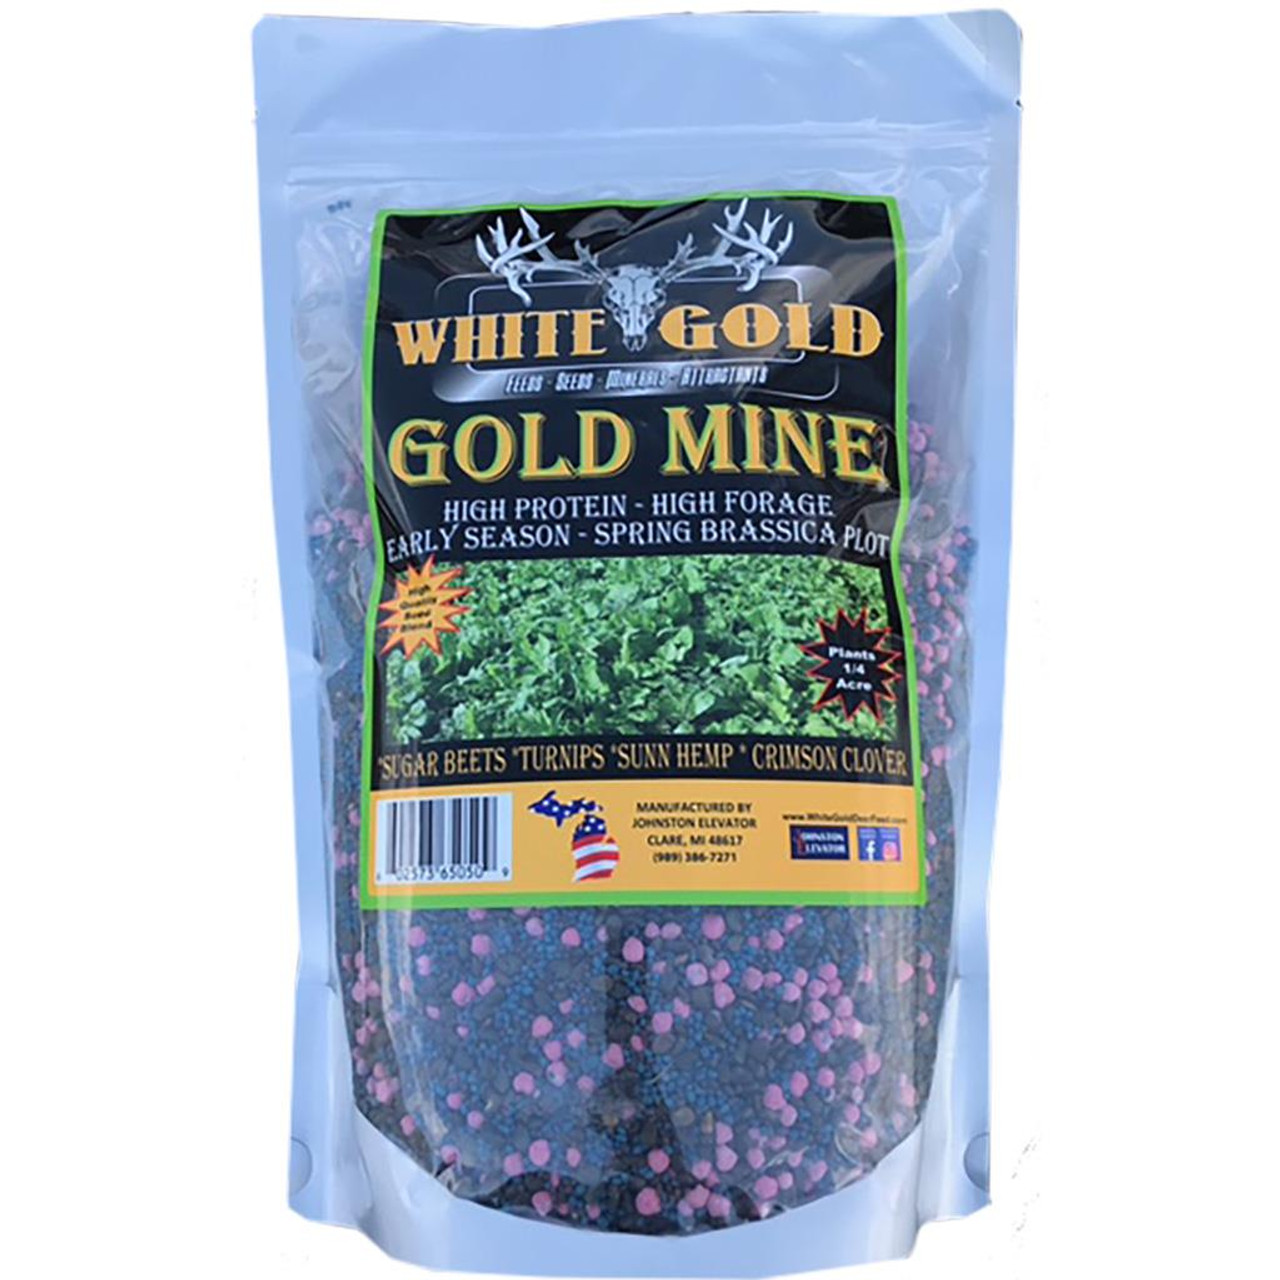 White Gold Green Monster Seed - 12.5 lb.